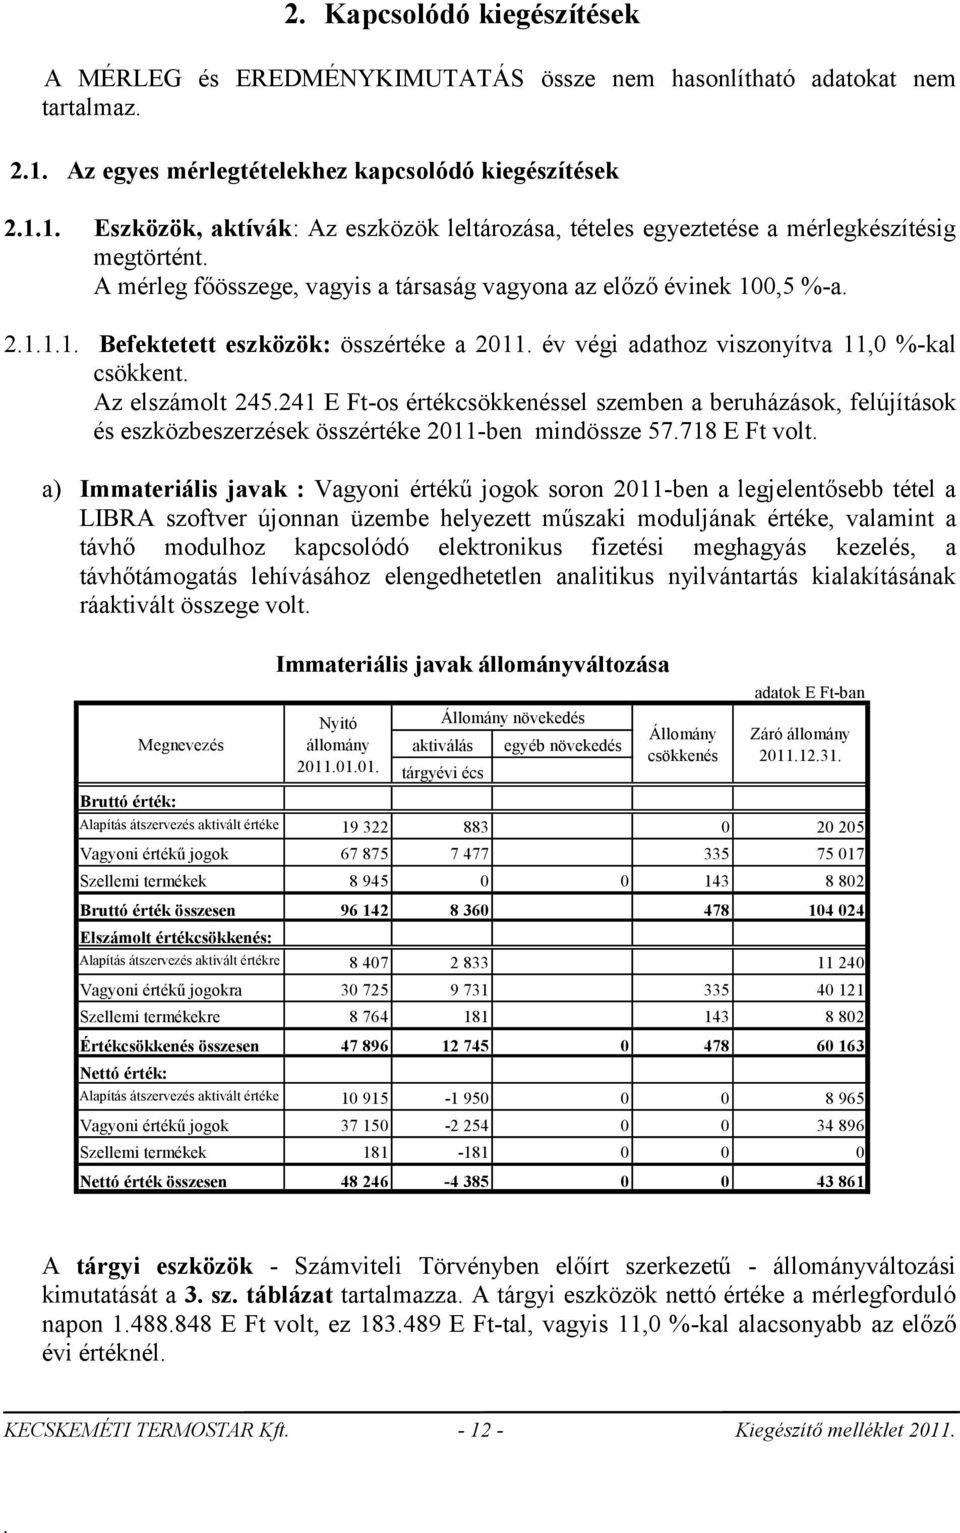 viszonyítva 11,0 %-kal csökkent Az elszámolt 245241 E Ft-os értékcsökkenéssel szemben a beruházások, felújítások és eszközbeszerzések összértéke 2011-ben mindössze 57718 E Ft volt a) Immateriális